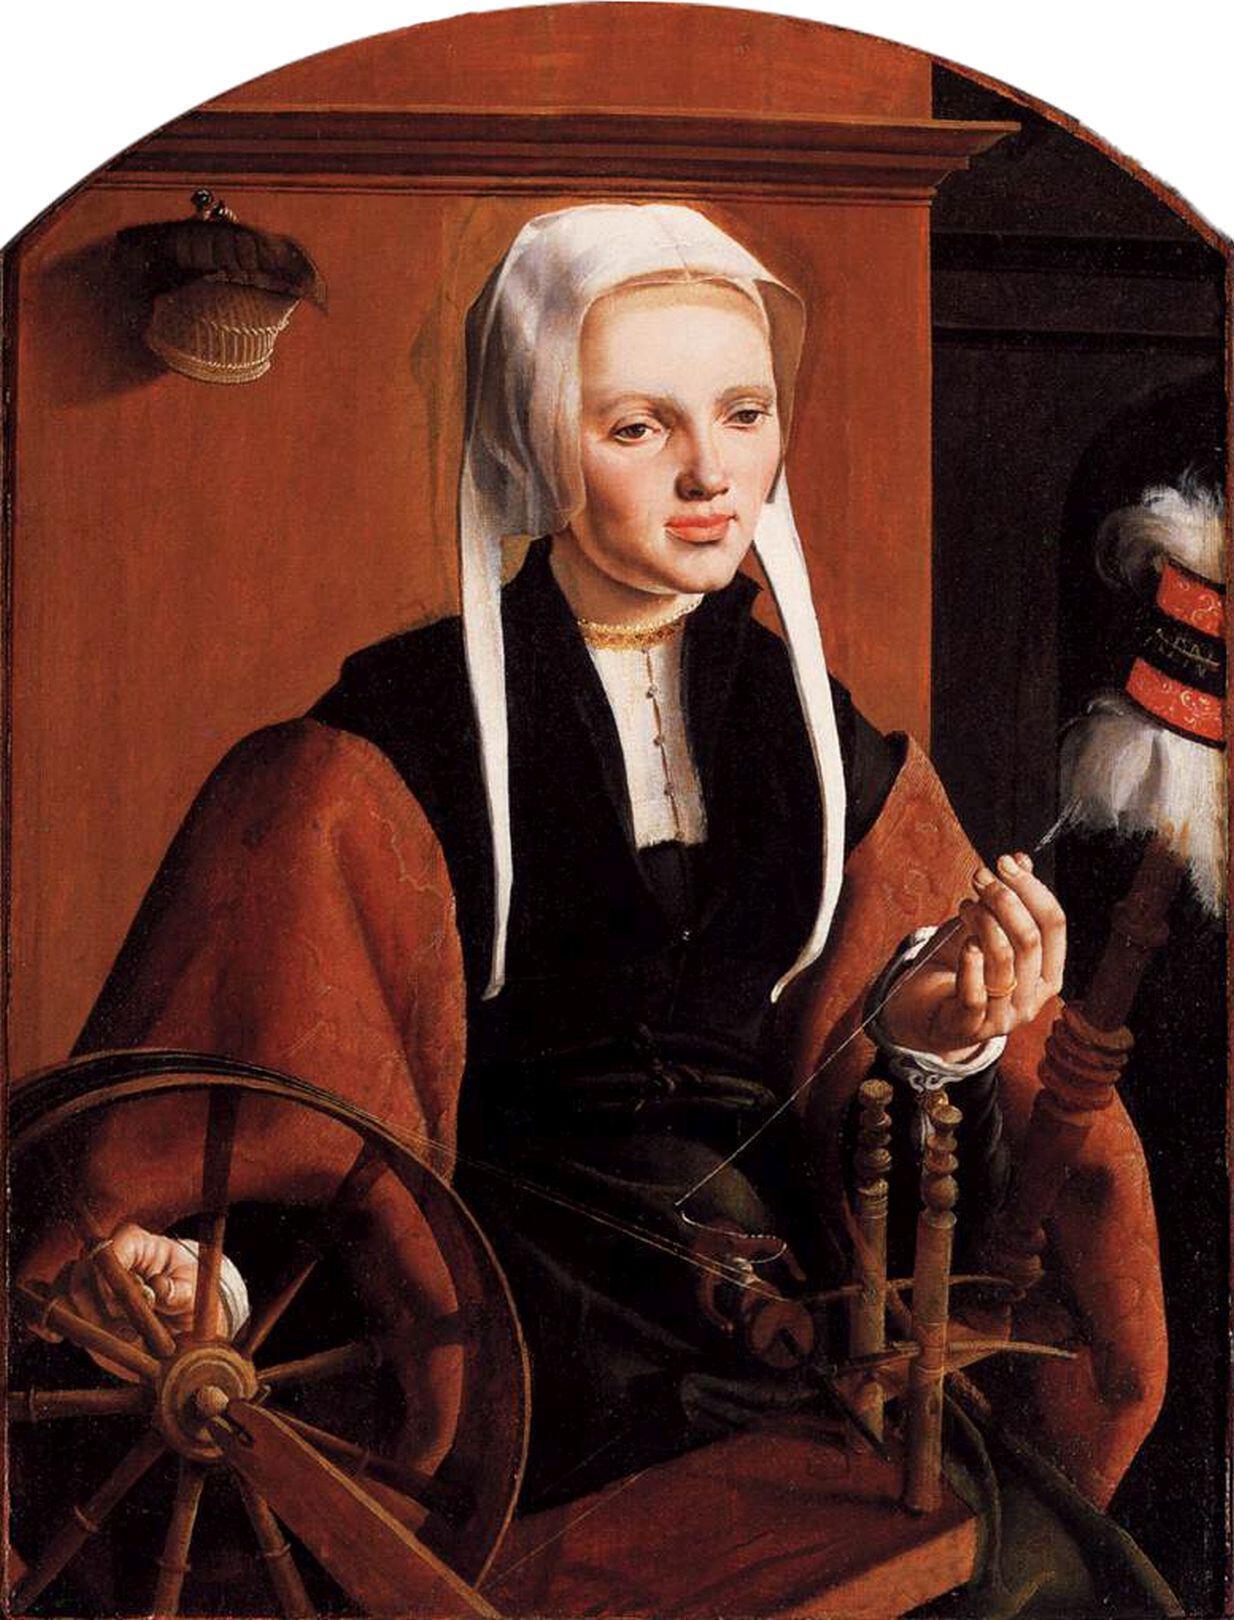 Retrato dse Anna Coode con el hilo y la rueca, smbolos de comercio y riqueza, del holands Maarten van Heemskerck.